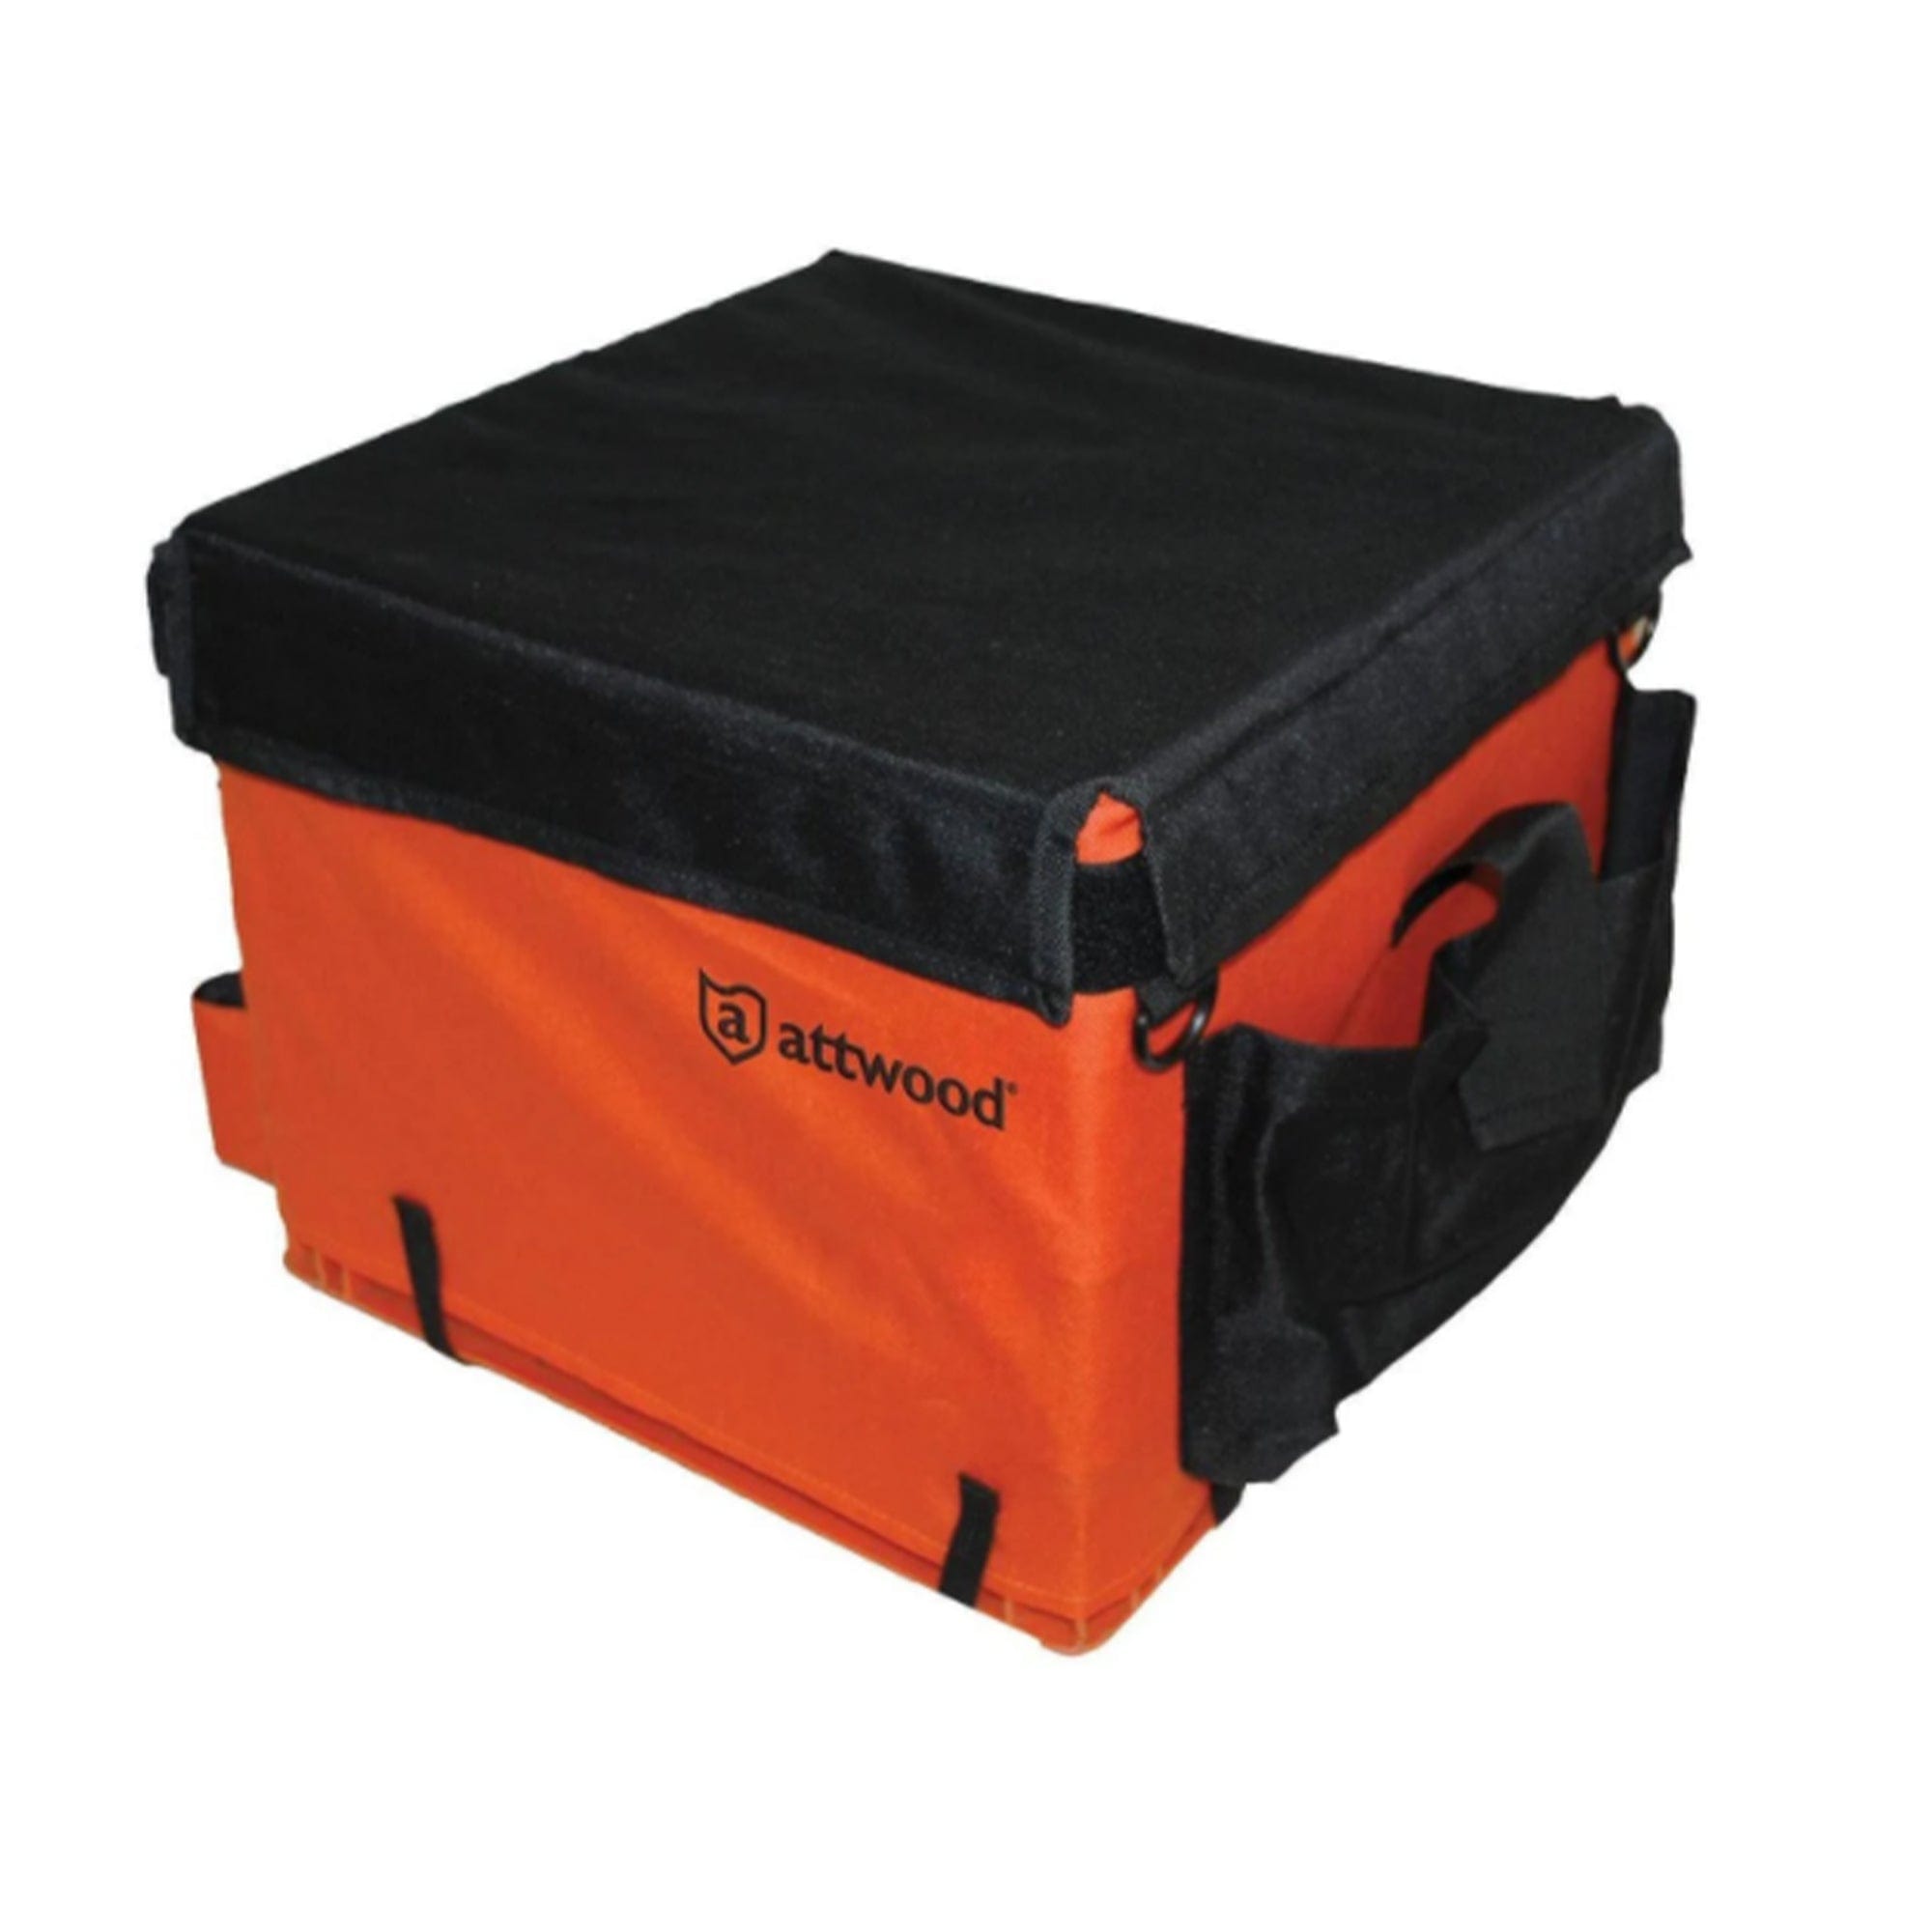 Attwood 11954-2 Kayak Storage Crate Bag